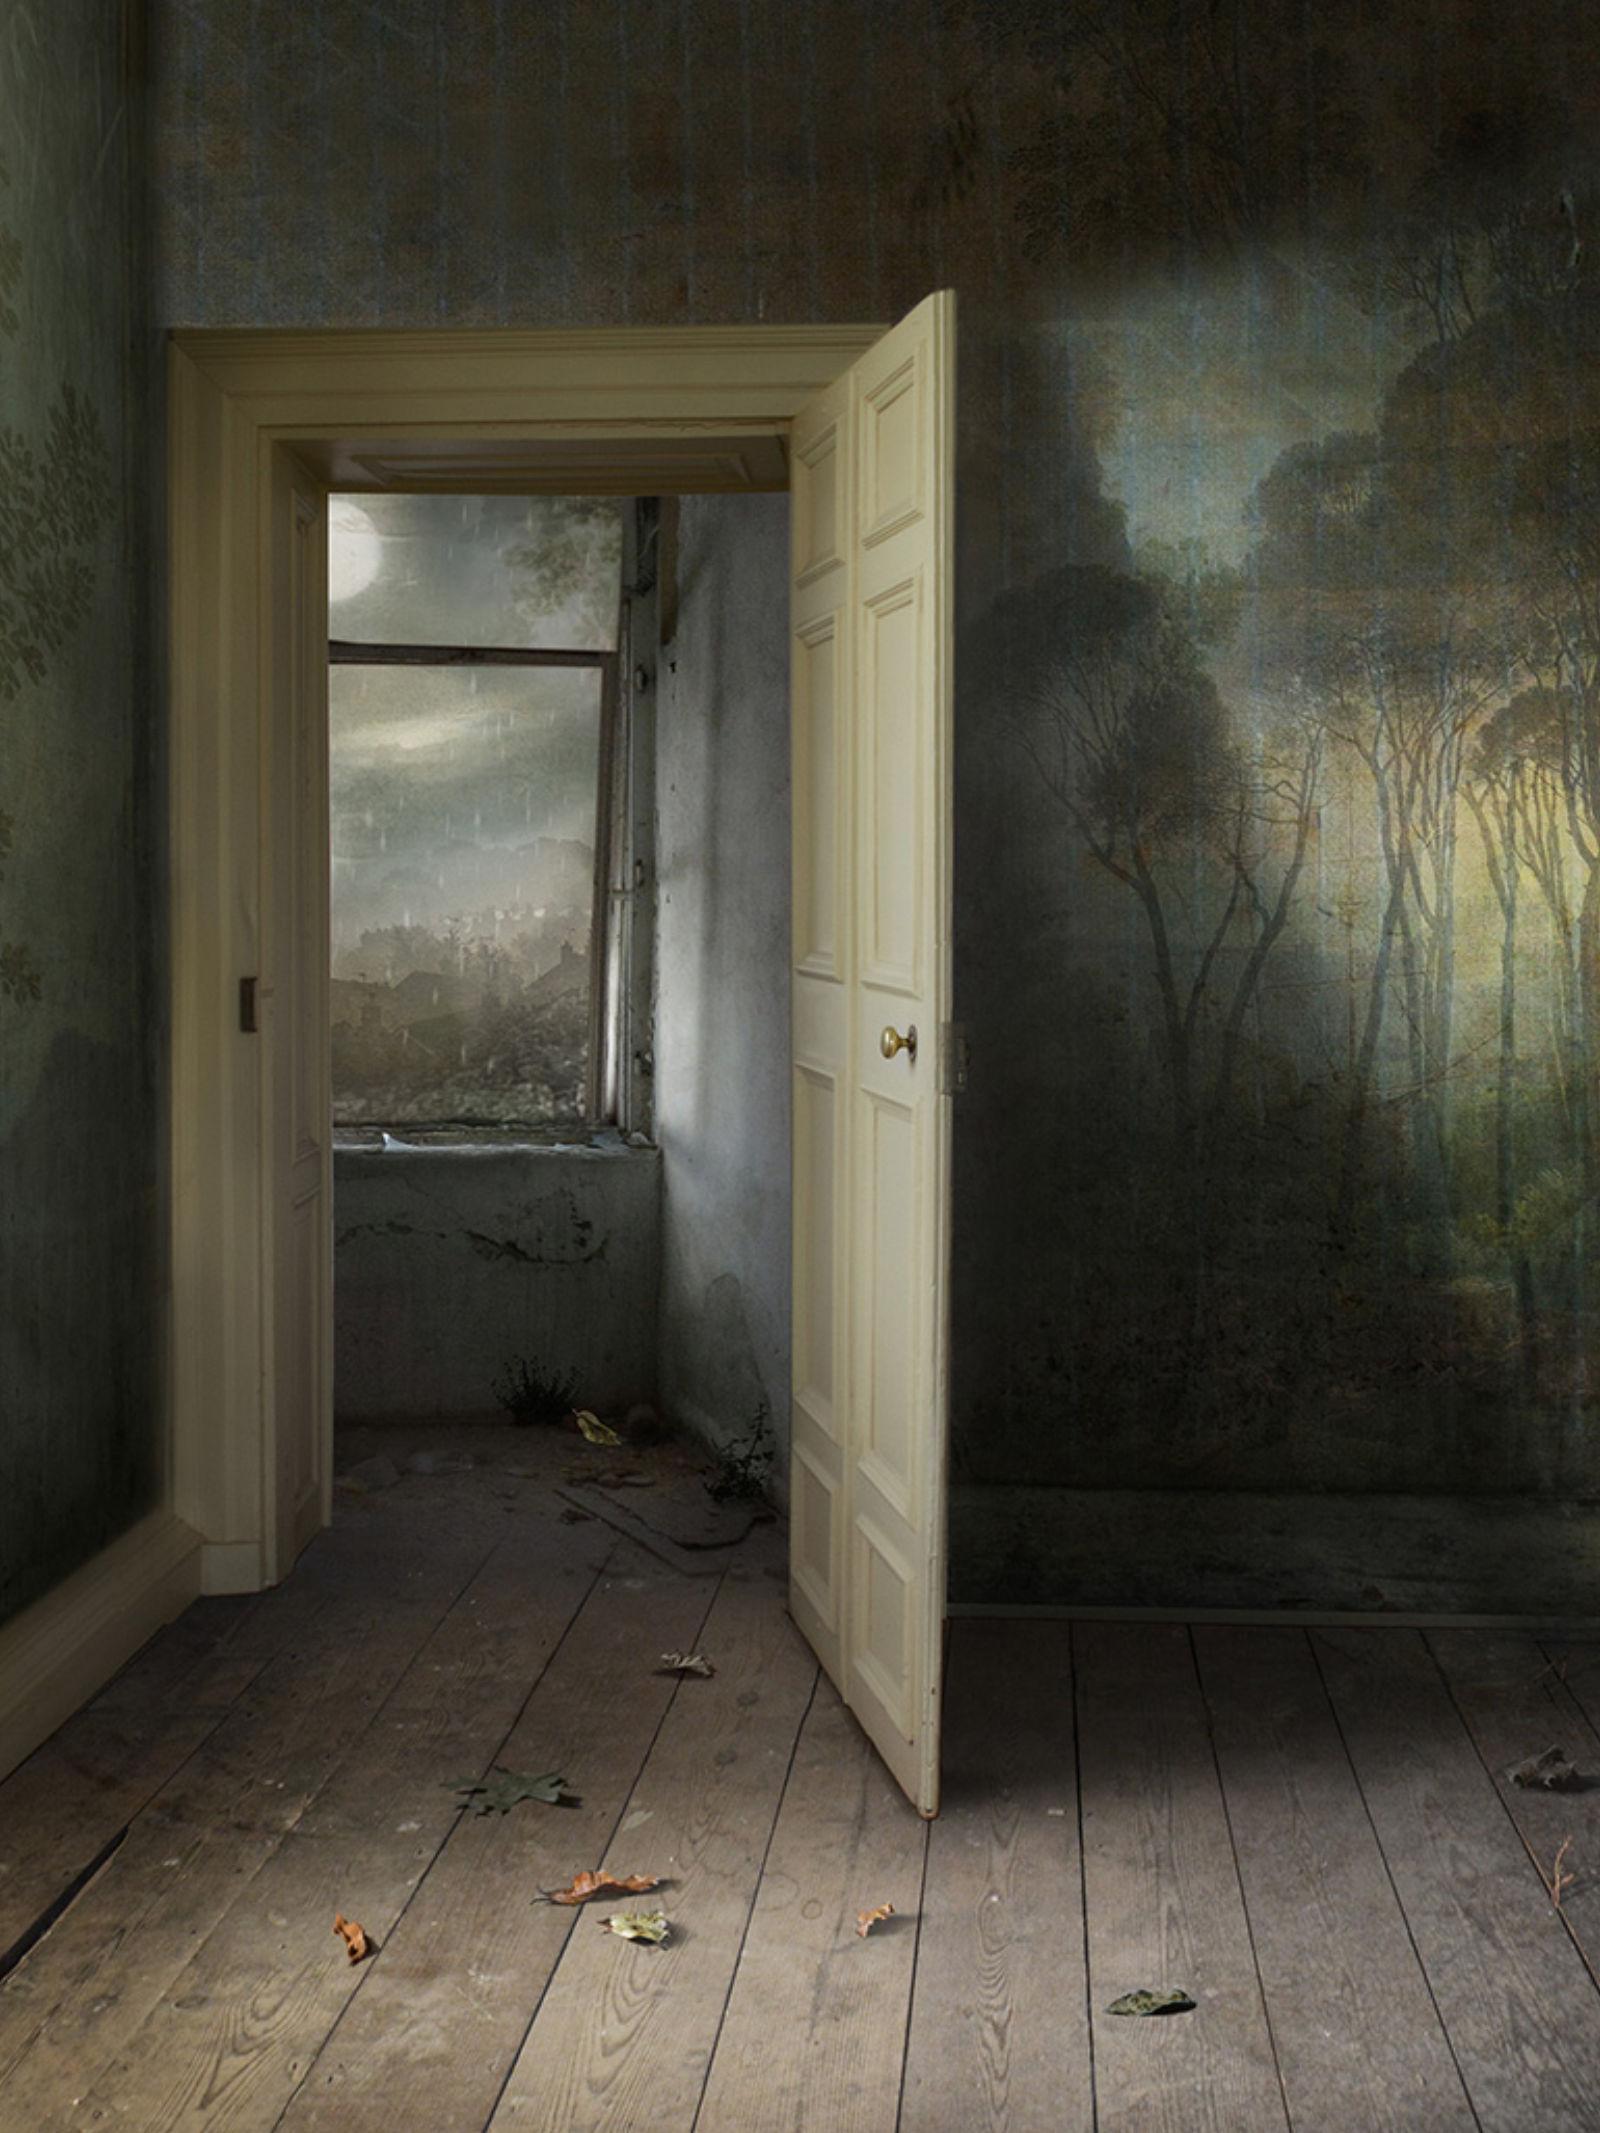 Interieur mit offener Tür – Fotomontage, Archivalisches Pigmentdruck, Inneneinrichtung (Zeitgenössisch), Photograph, von Suzanne Moxhay